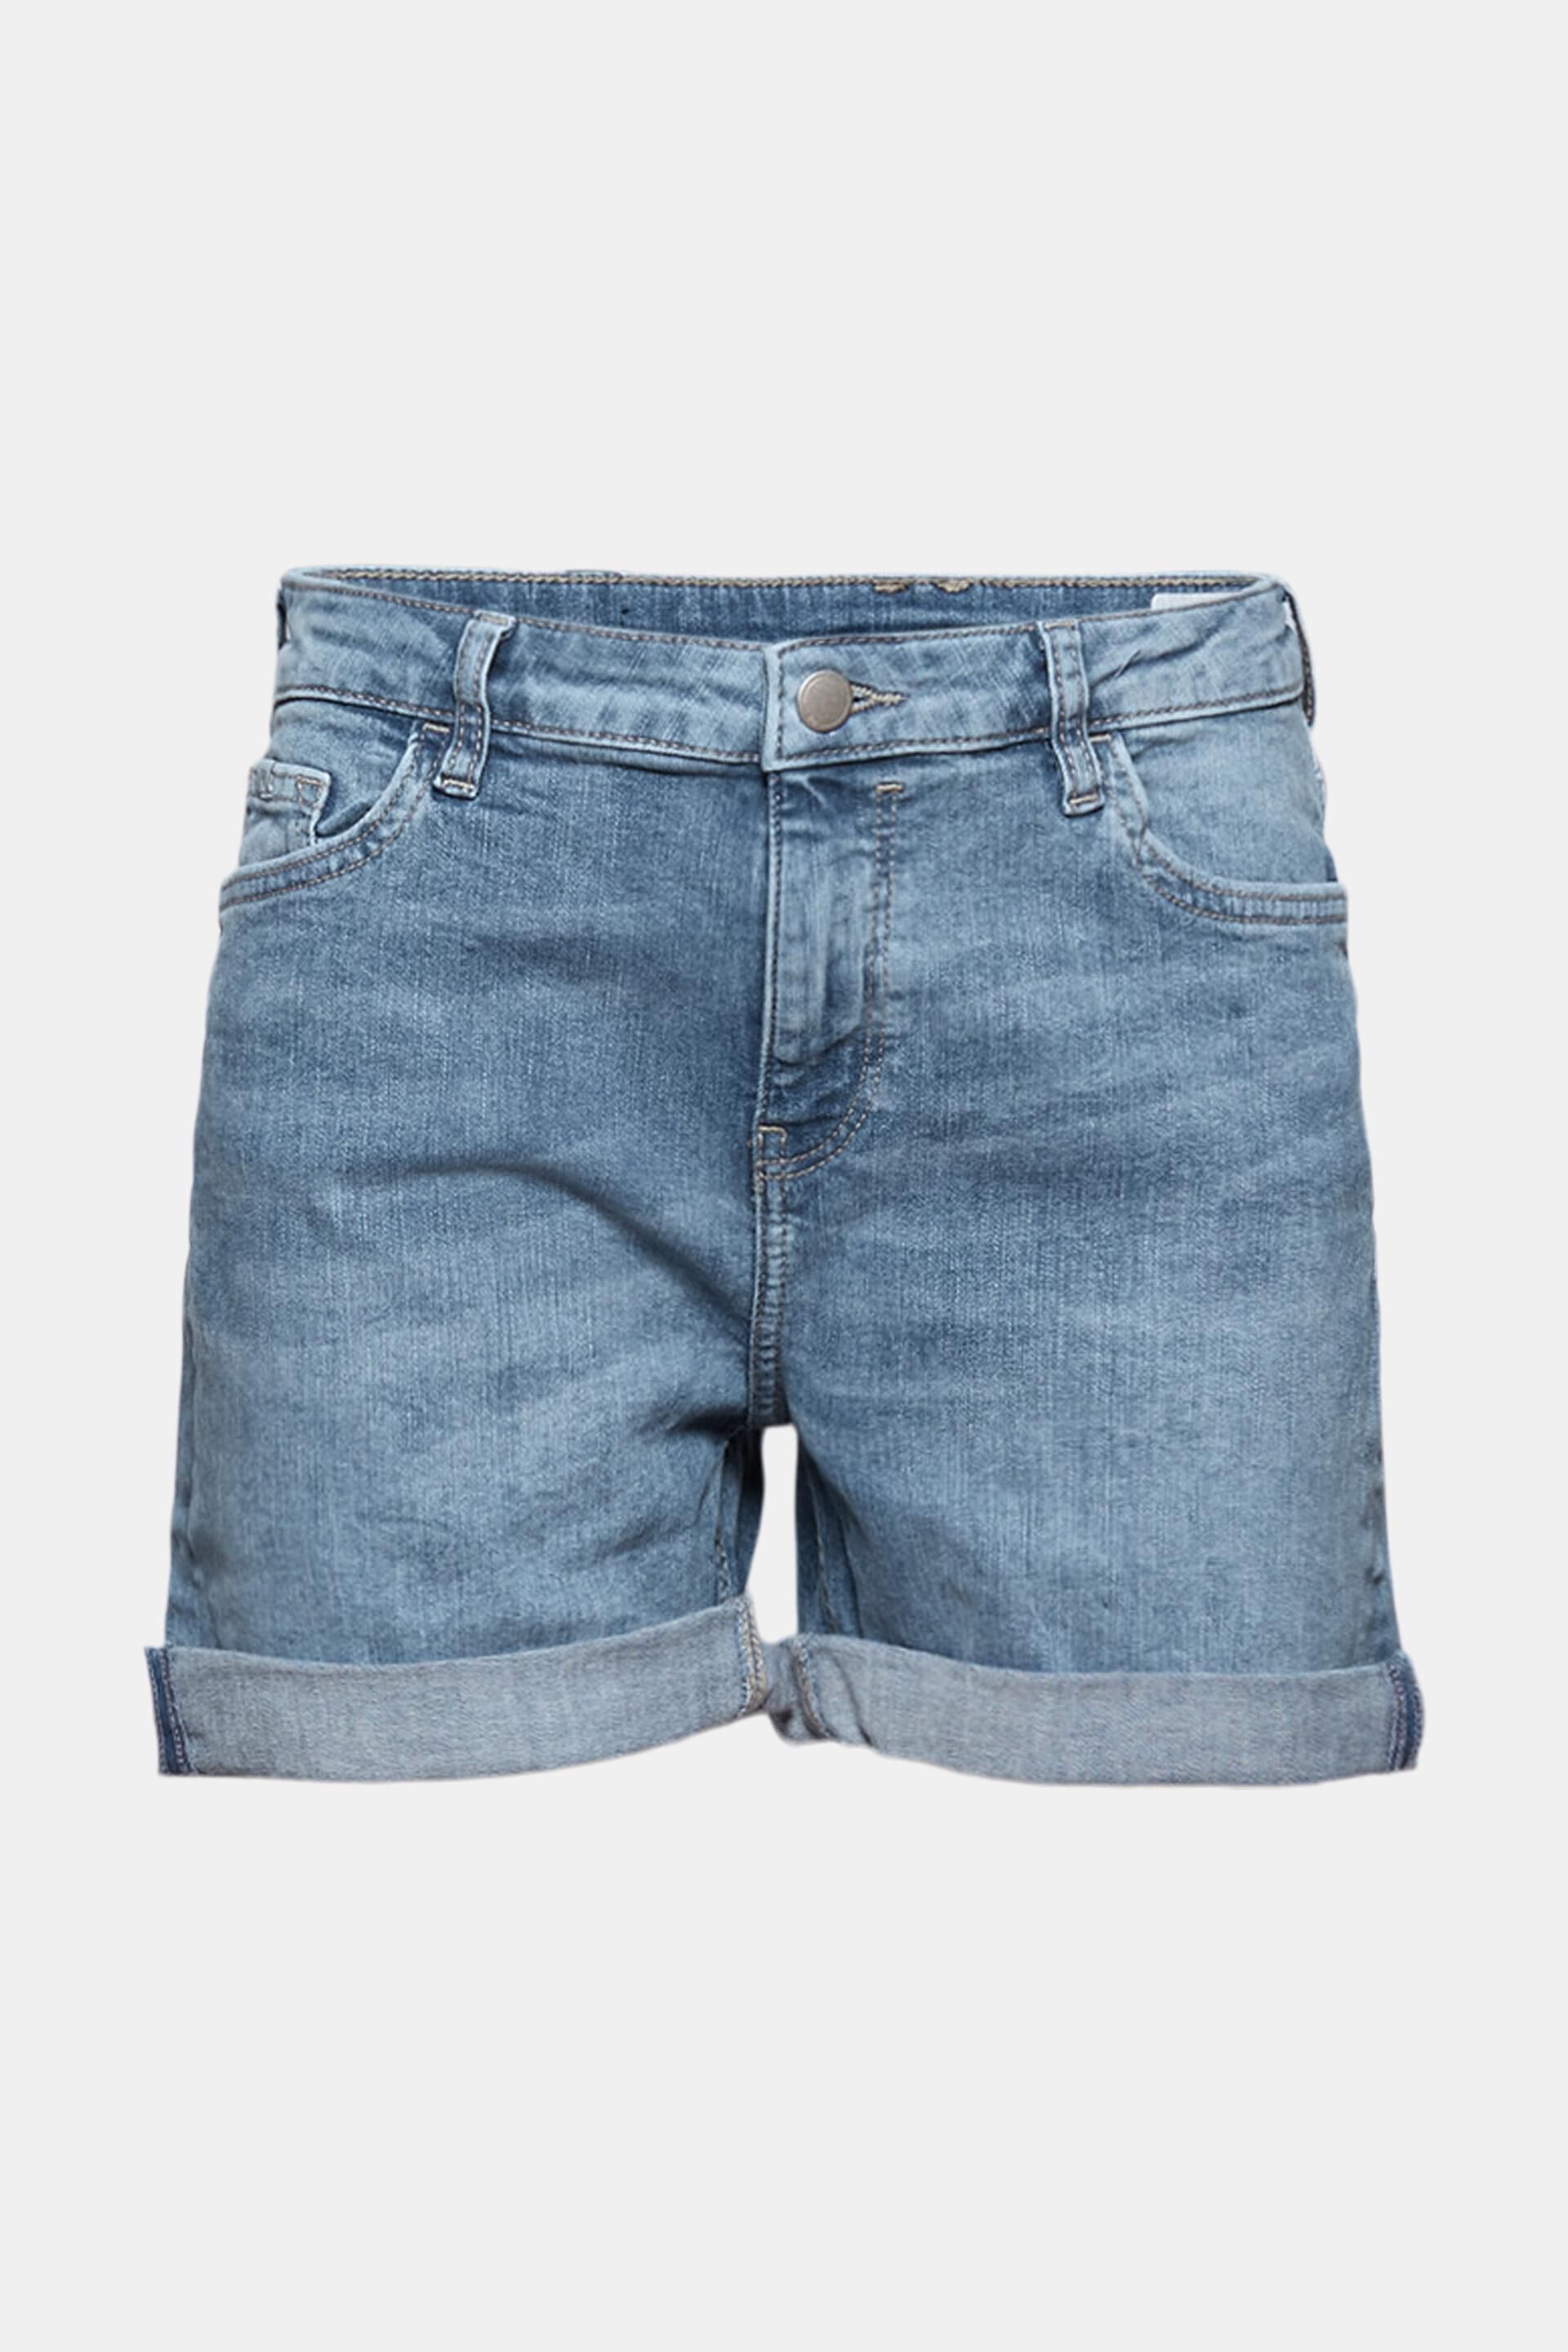 Esprit Sweatshirt Voor in het Blauw Dames Kleding voor voor Shorts voor Jeans en denim shorts 